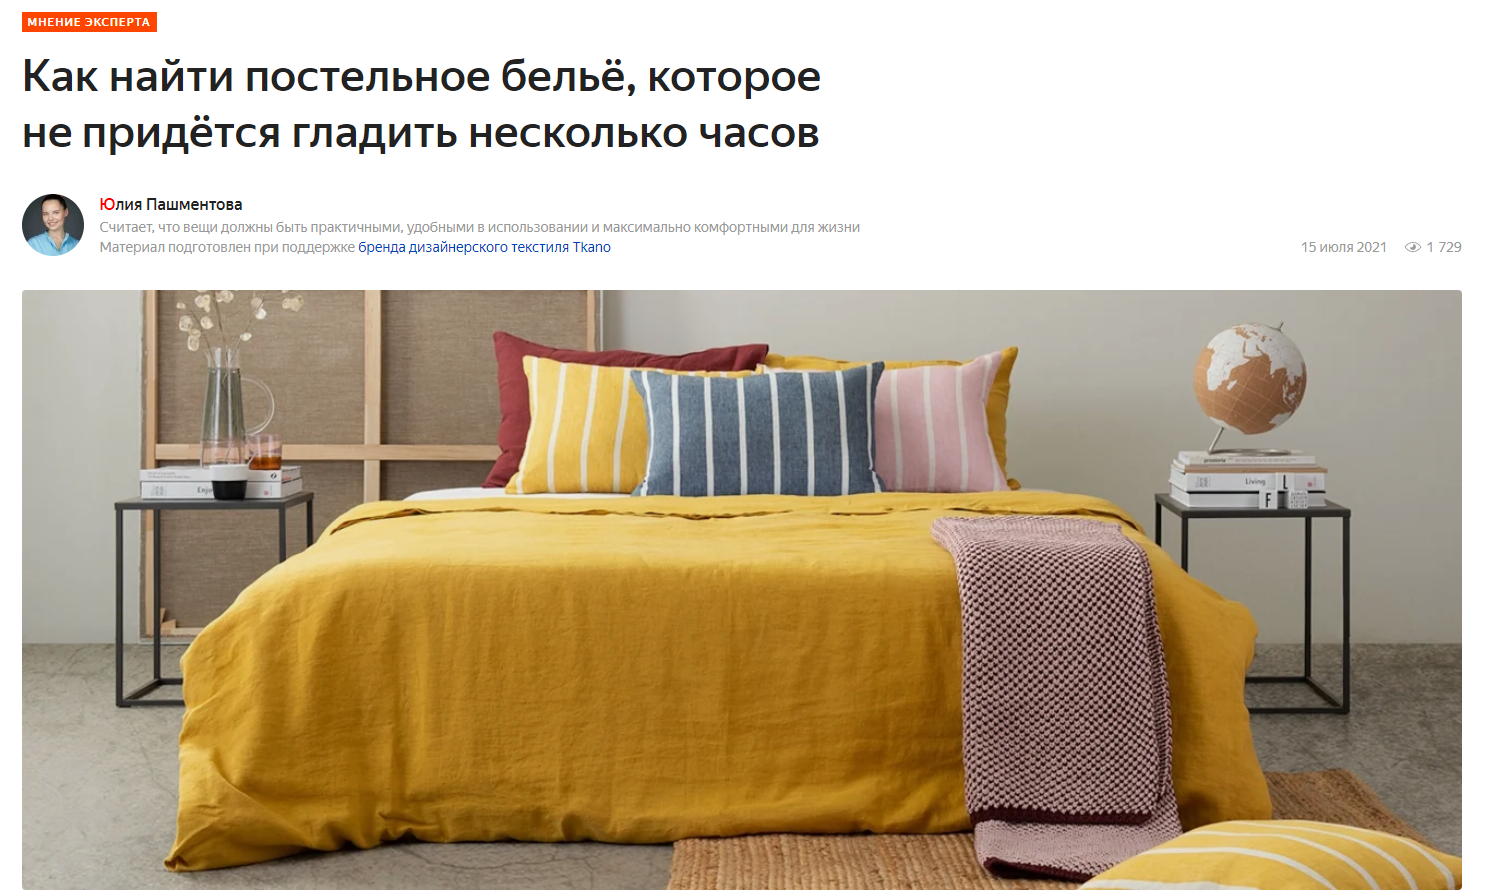 market.yandex.ru: постельное белье Tkano в экспертной статье "Как найти постельное белье, которое не придется гладить несколько часов"